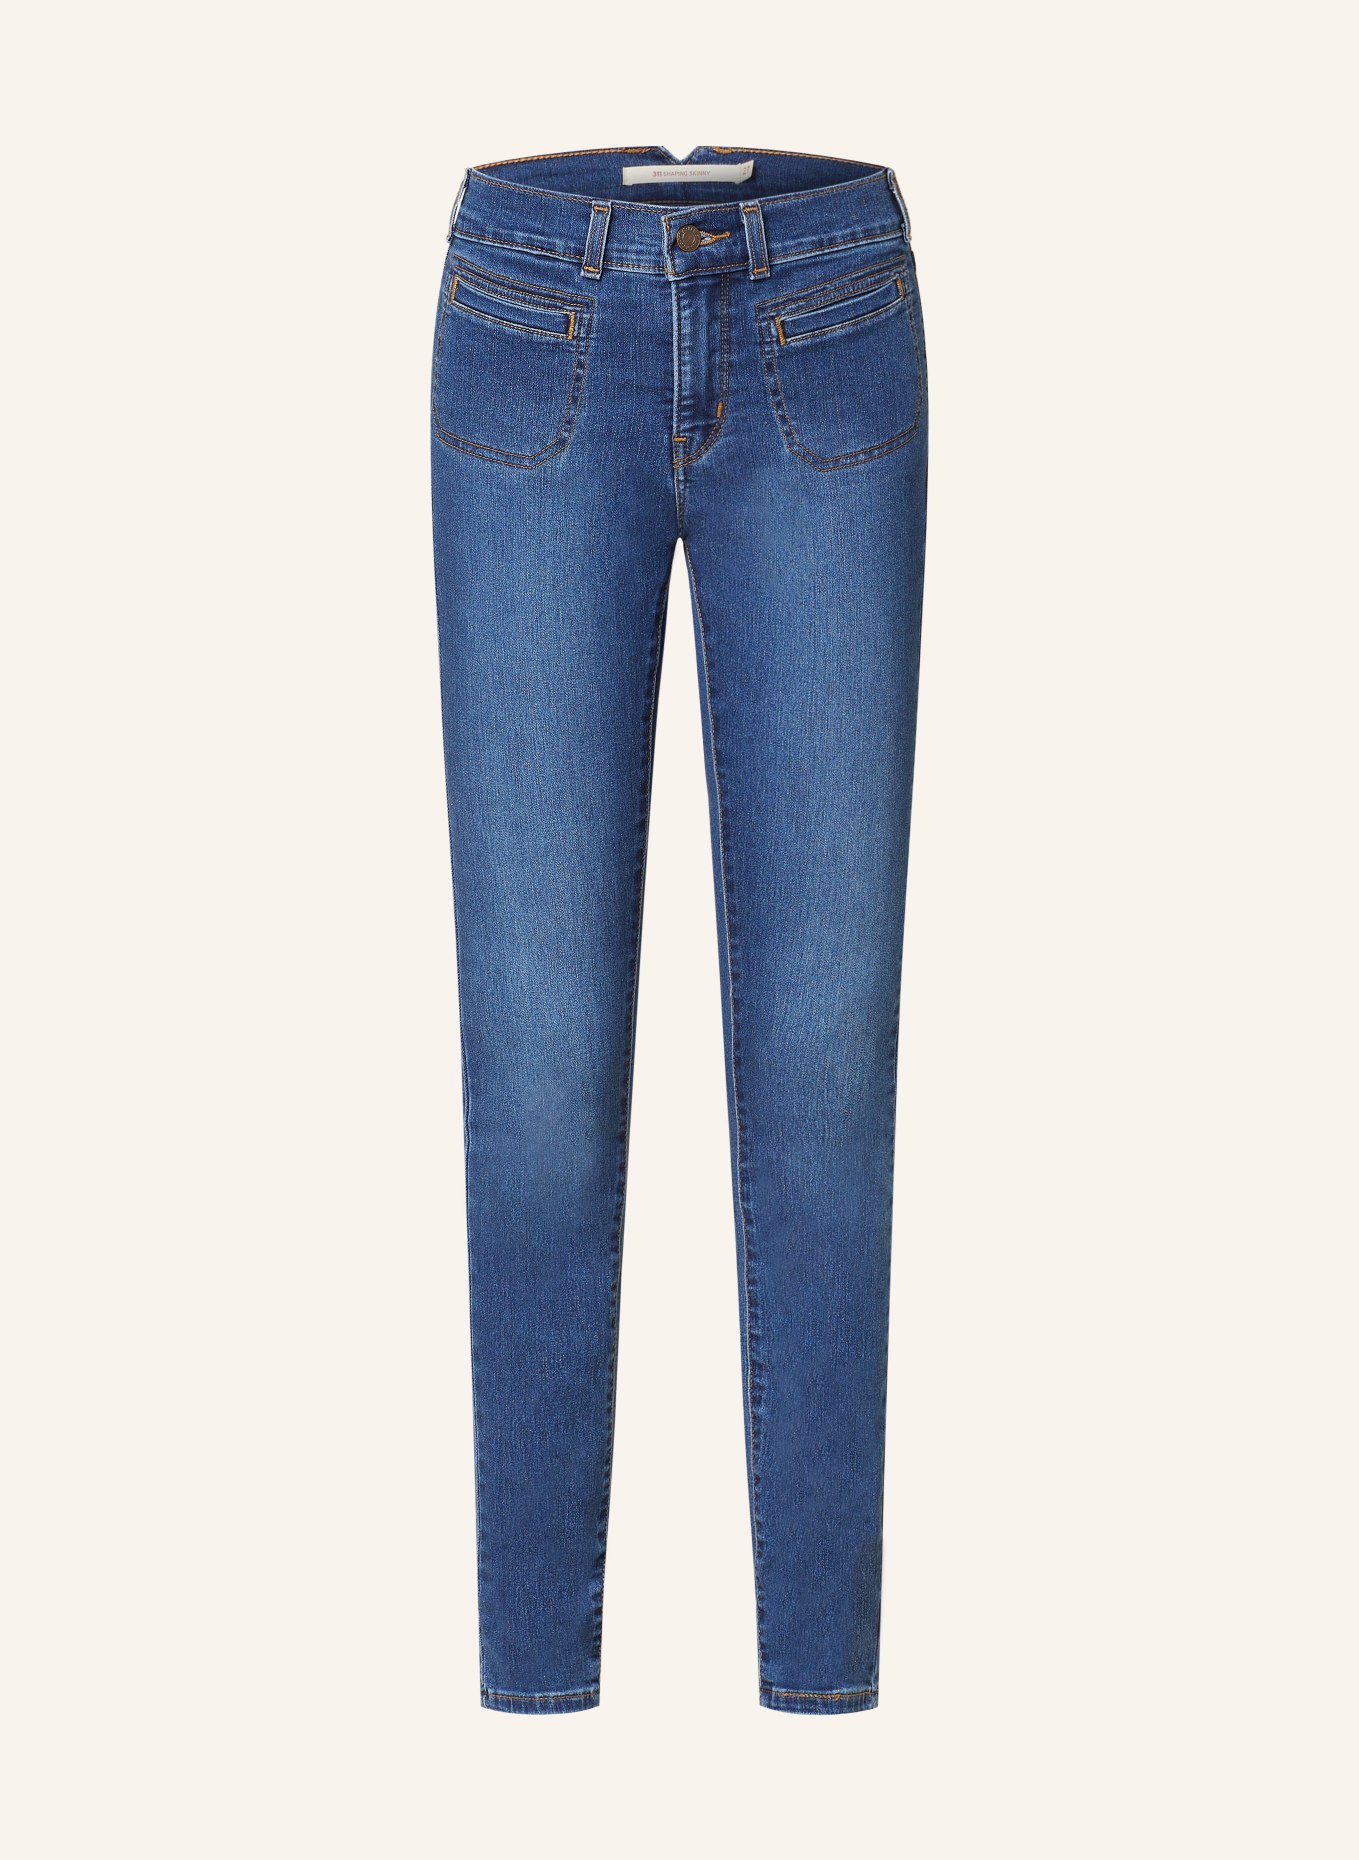 Levi's® Skinny jeans 311, Color: 00 Dark Indigo - Worn In (Image 1)